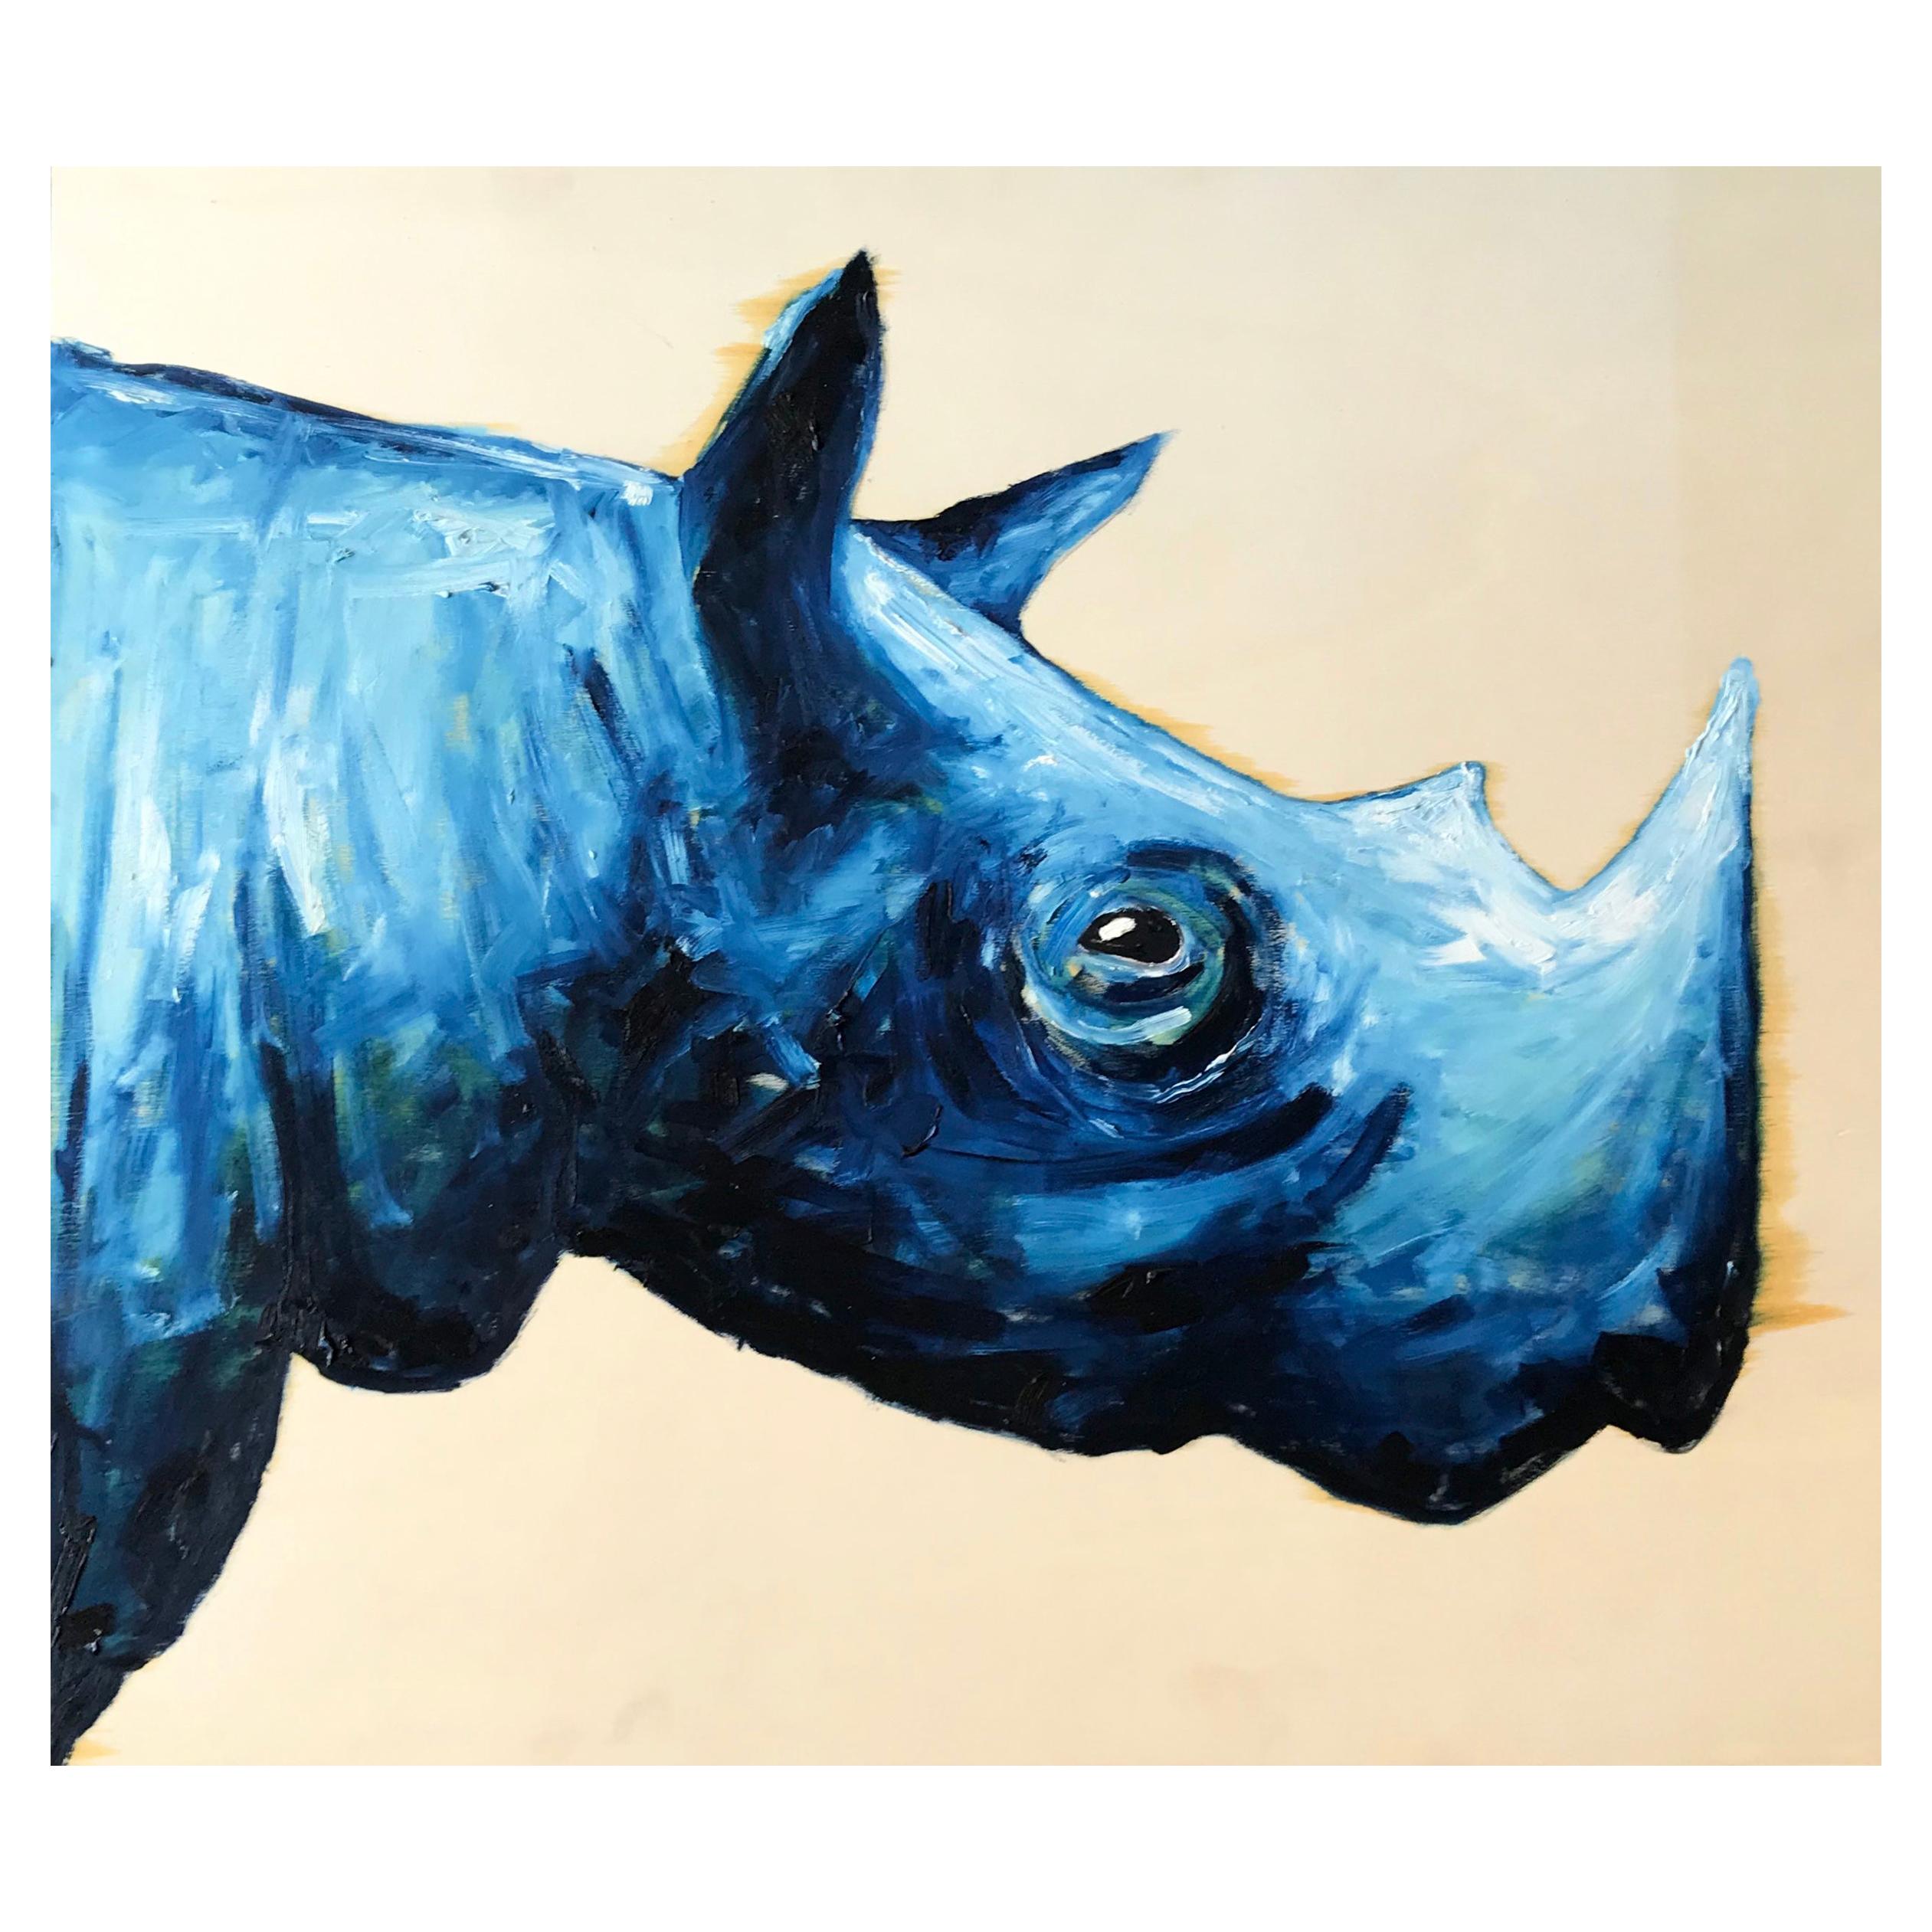 Blue Rhinoceros